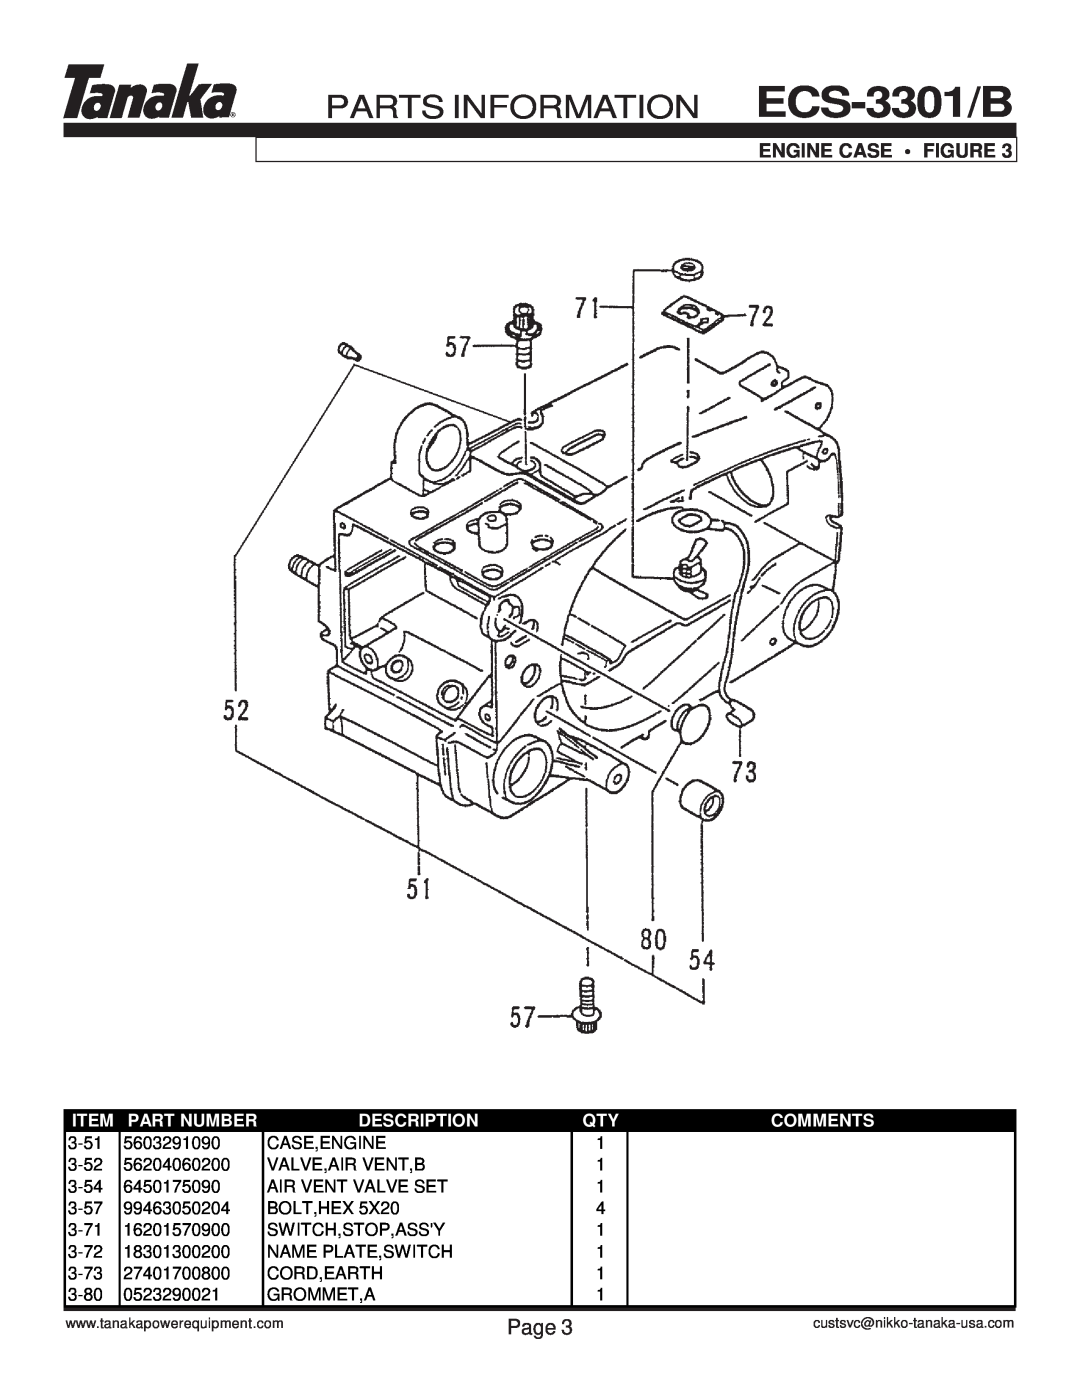 Tanaka manual Engine Case • Figure, PARTS INFORMATION ECS-3301/B, Page, Part Number, Description, Comments 